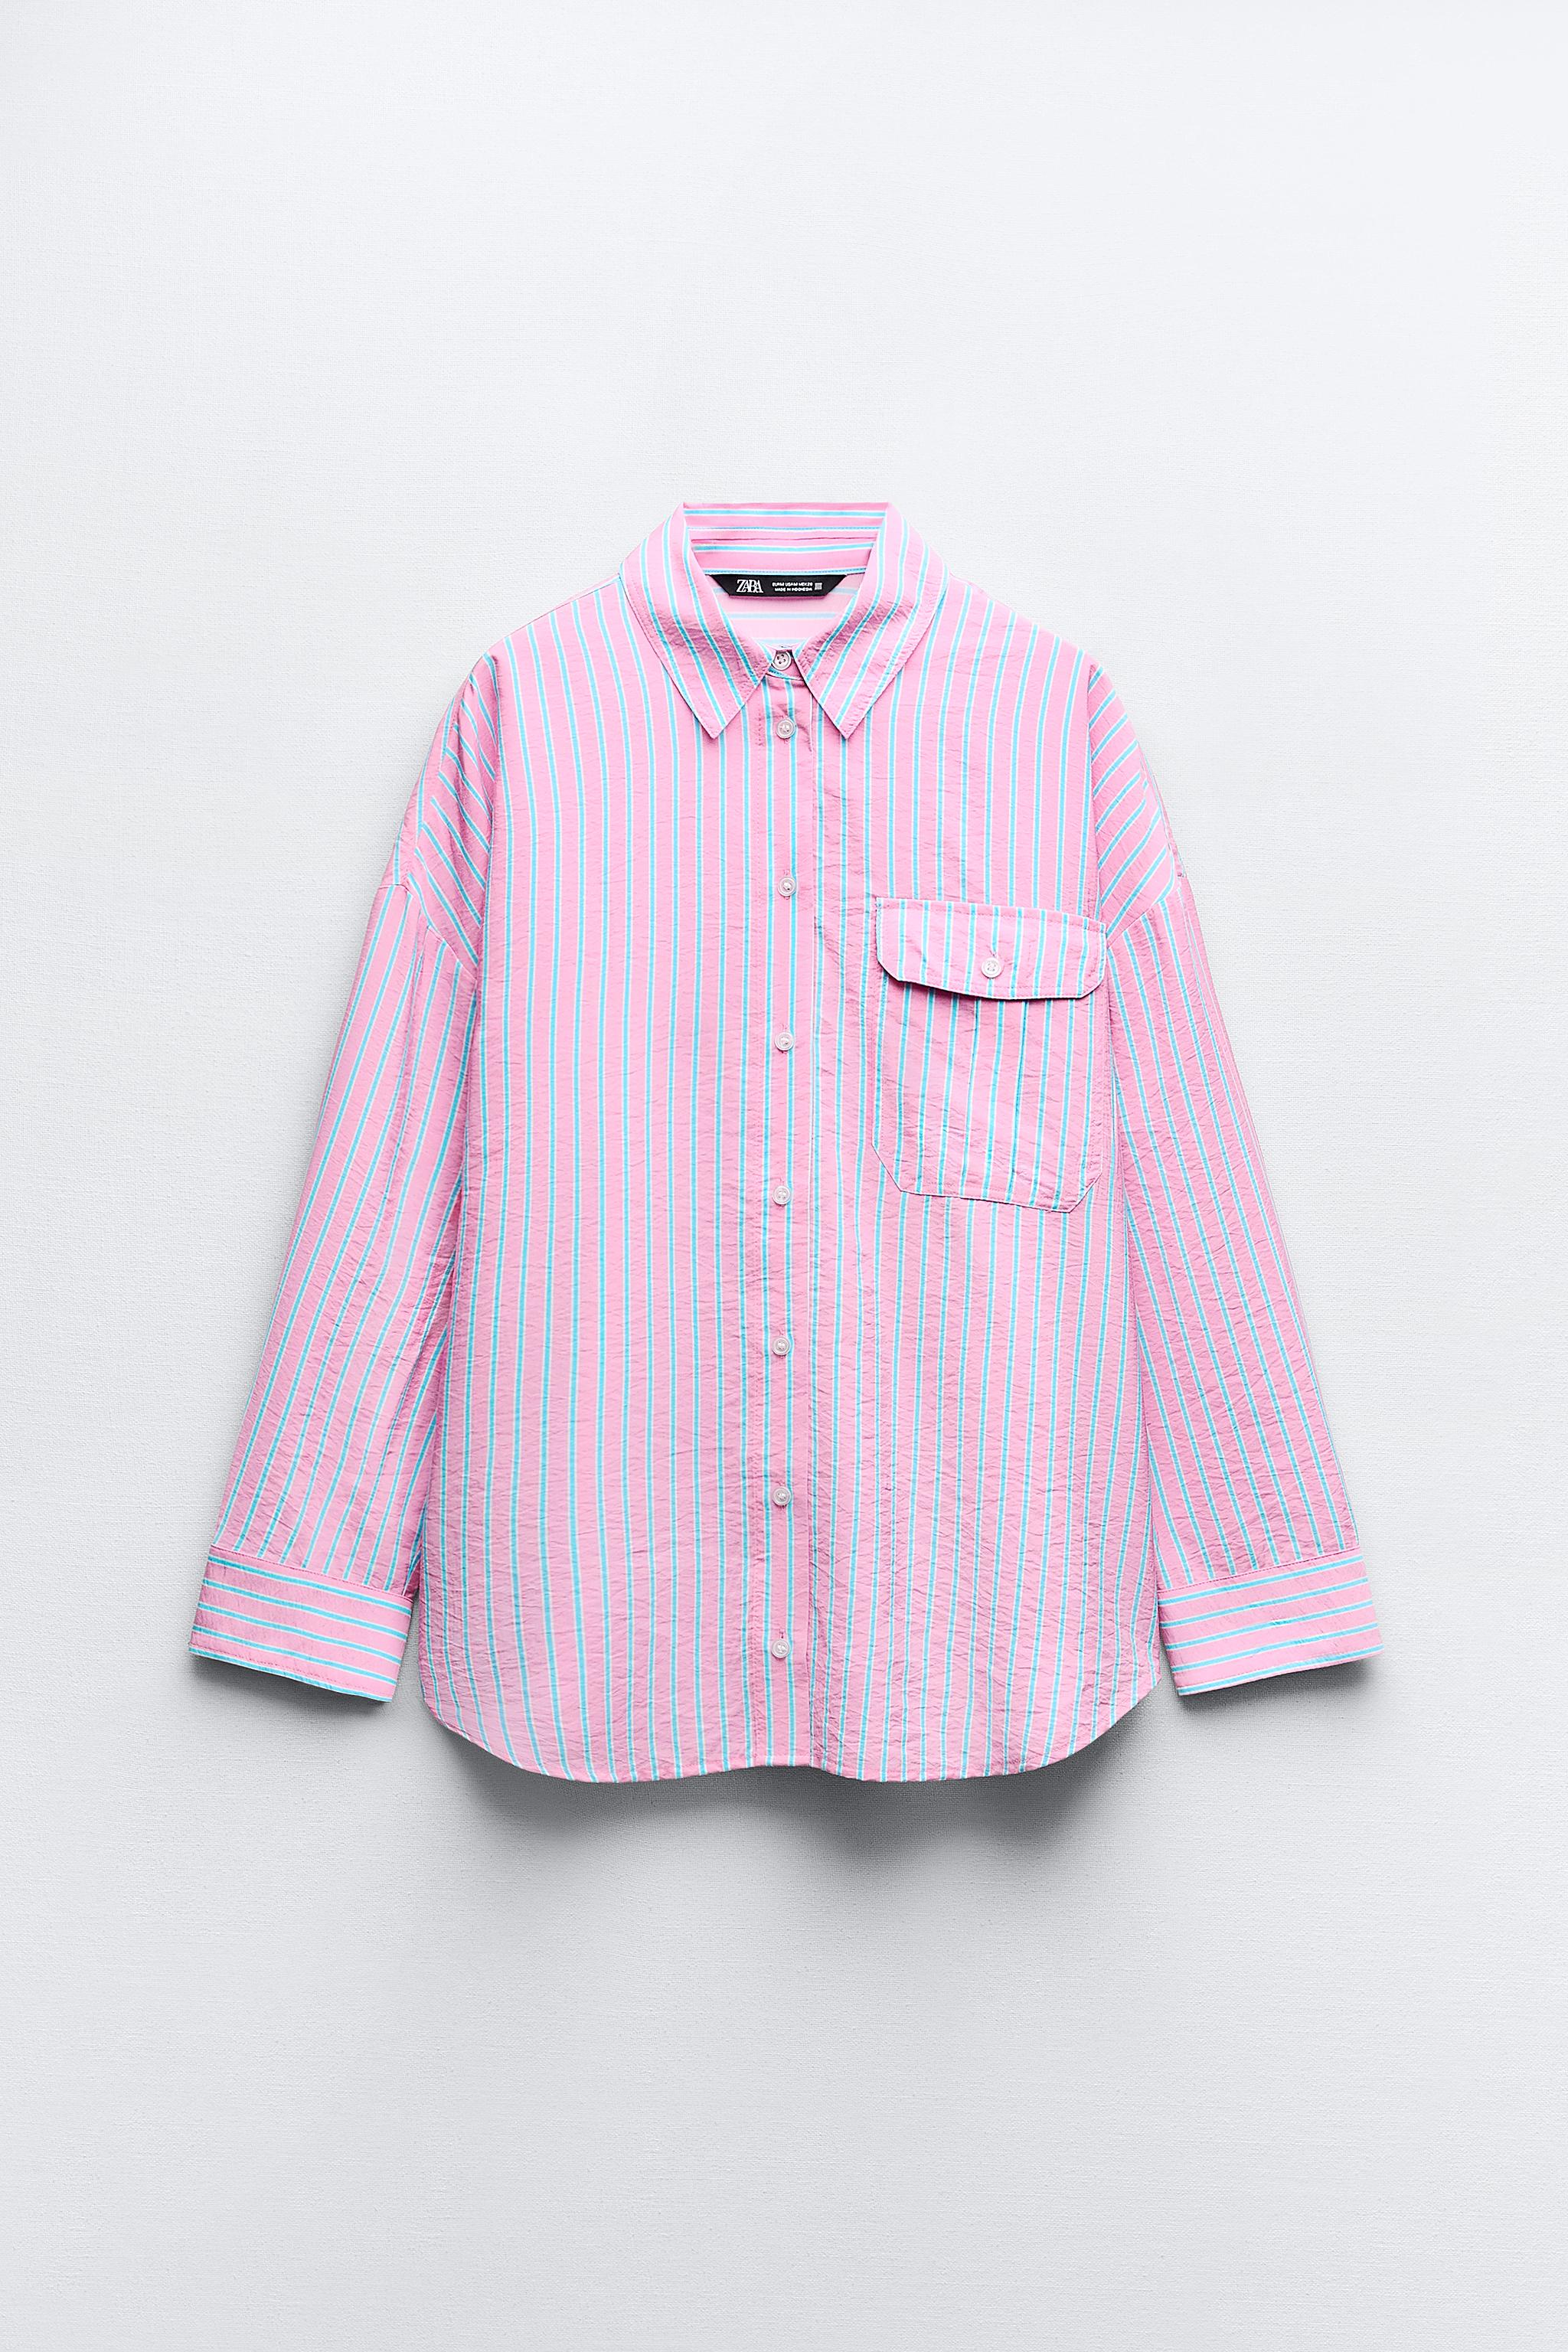 レディースピンクシャツ | 最新コレクション | ZARA 日本